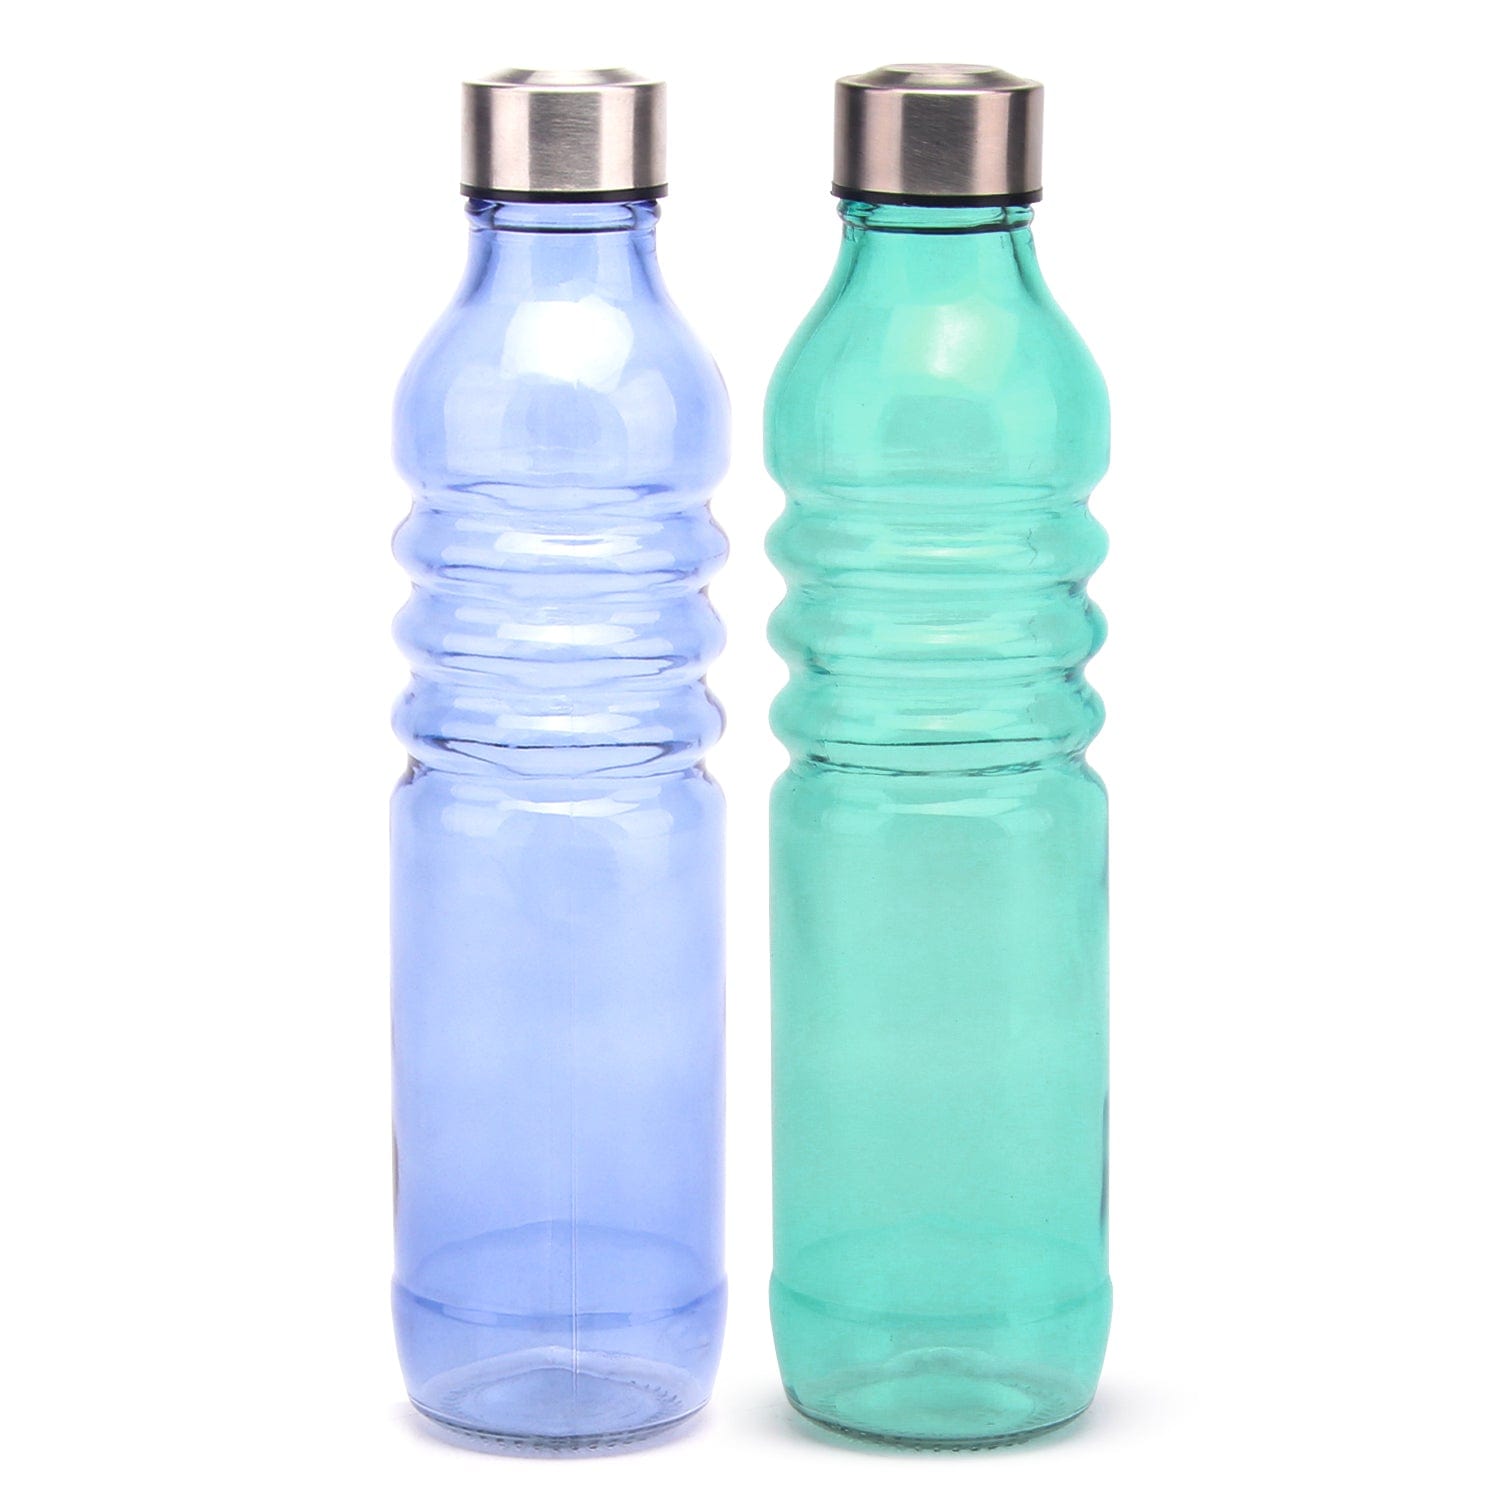 Red Butler Bottles Coloured Glass Bottle 750ml | 2pcs Set | Green & Blue DGBT75A1 Redbutler